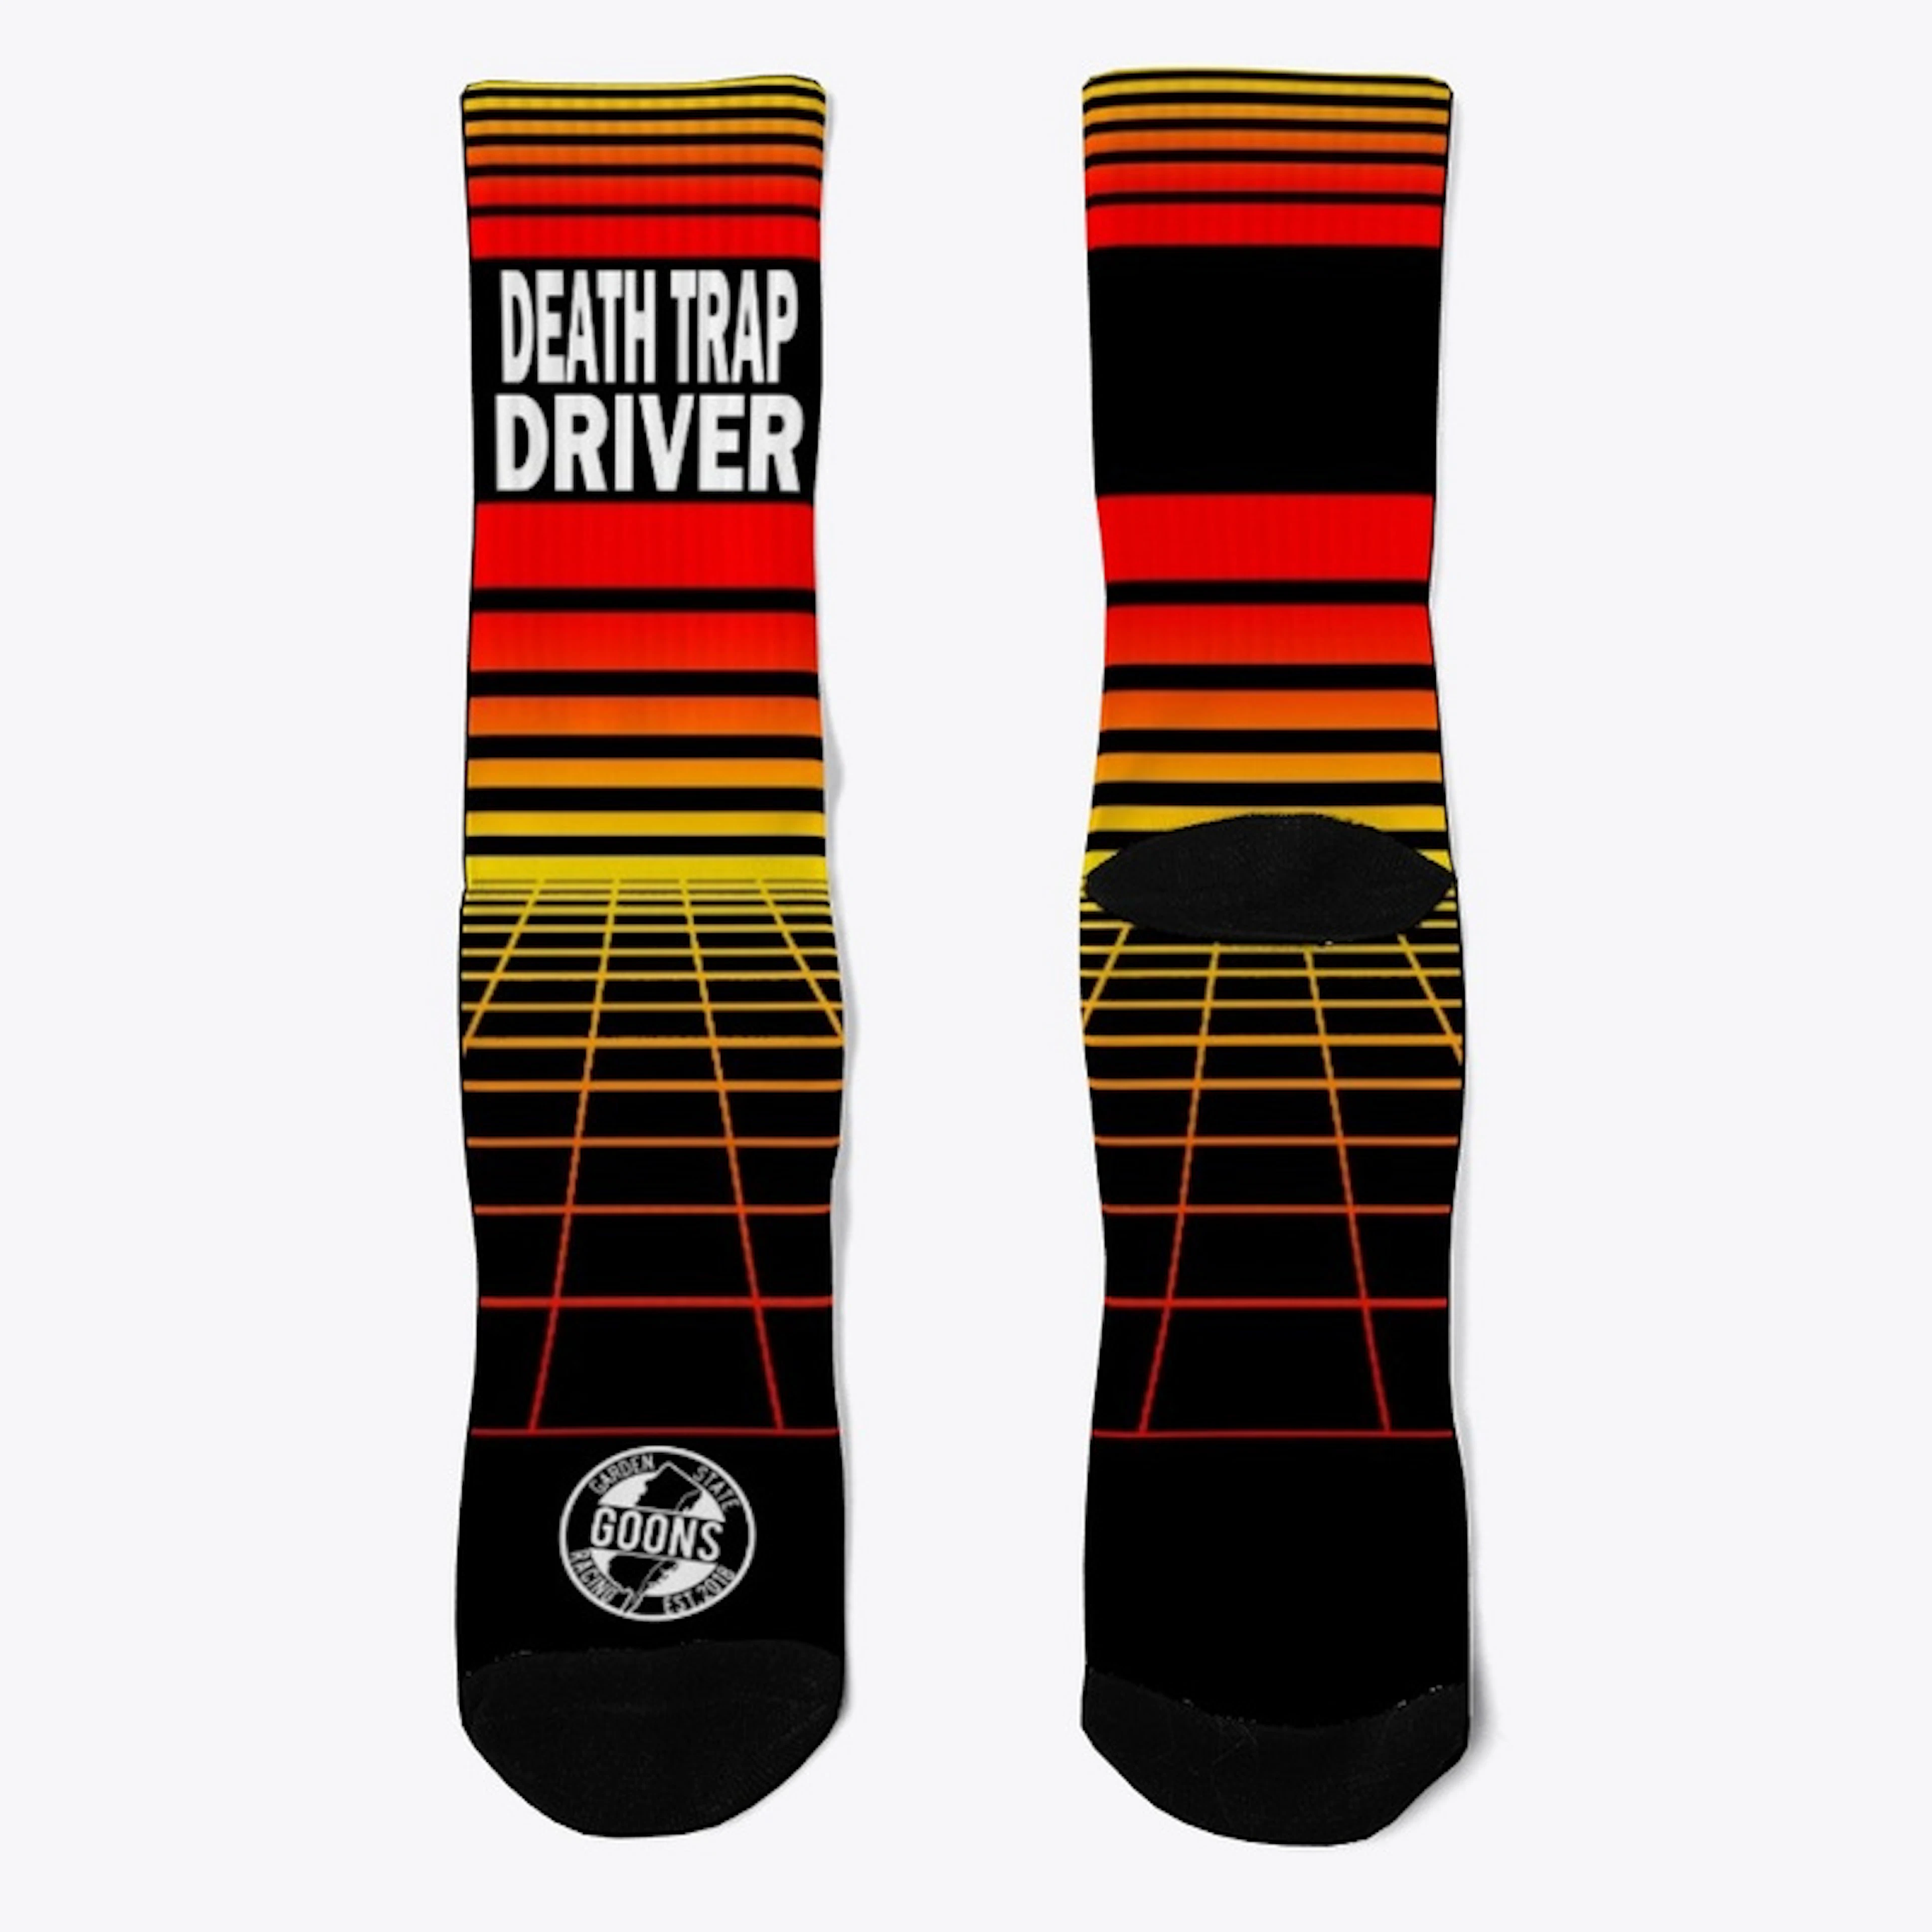 DEATH TRAP DRIVER - Retro Socks